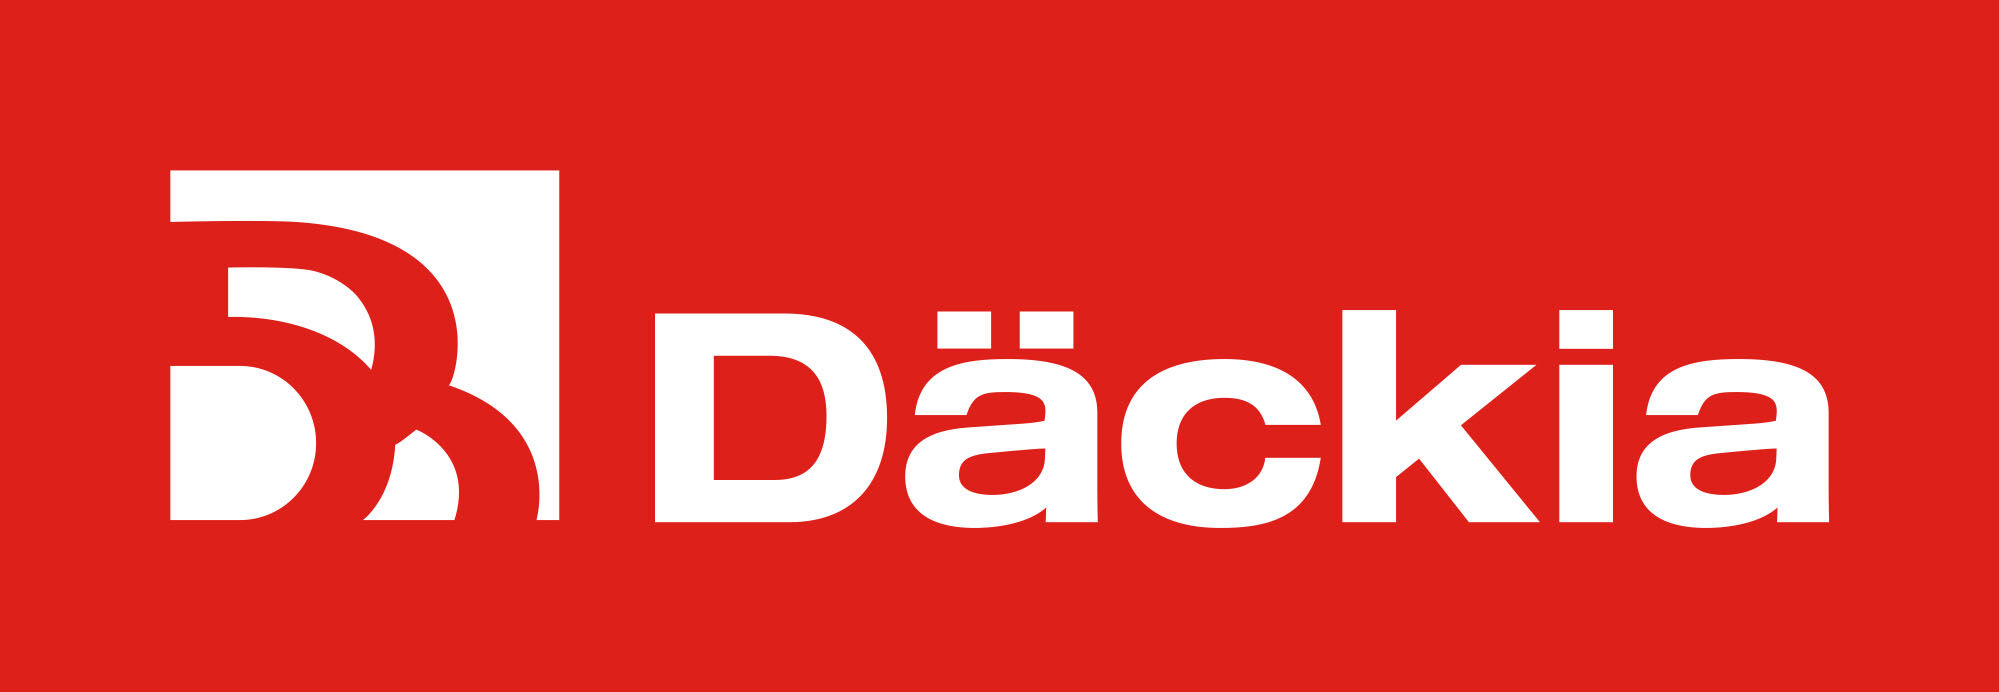 dackia-logo-2021-landscape-rgb.jpg